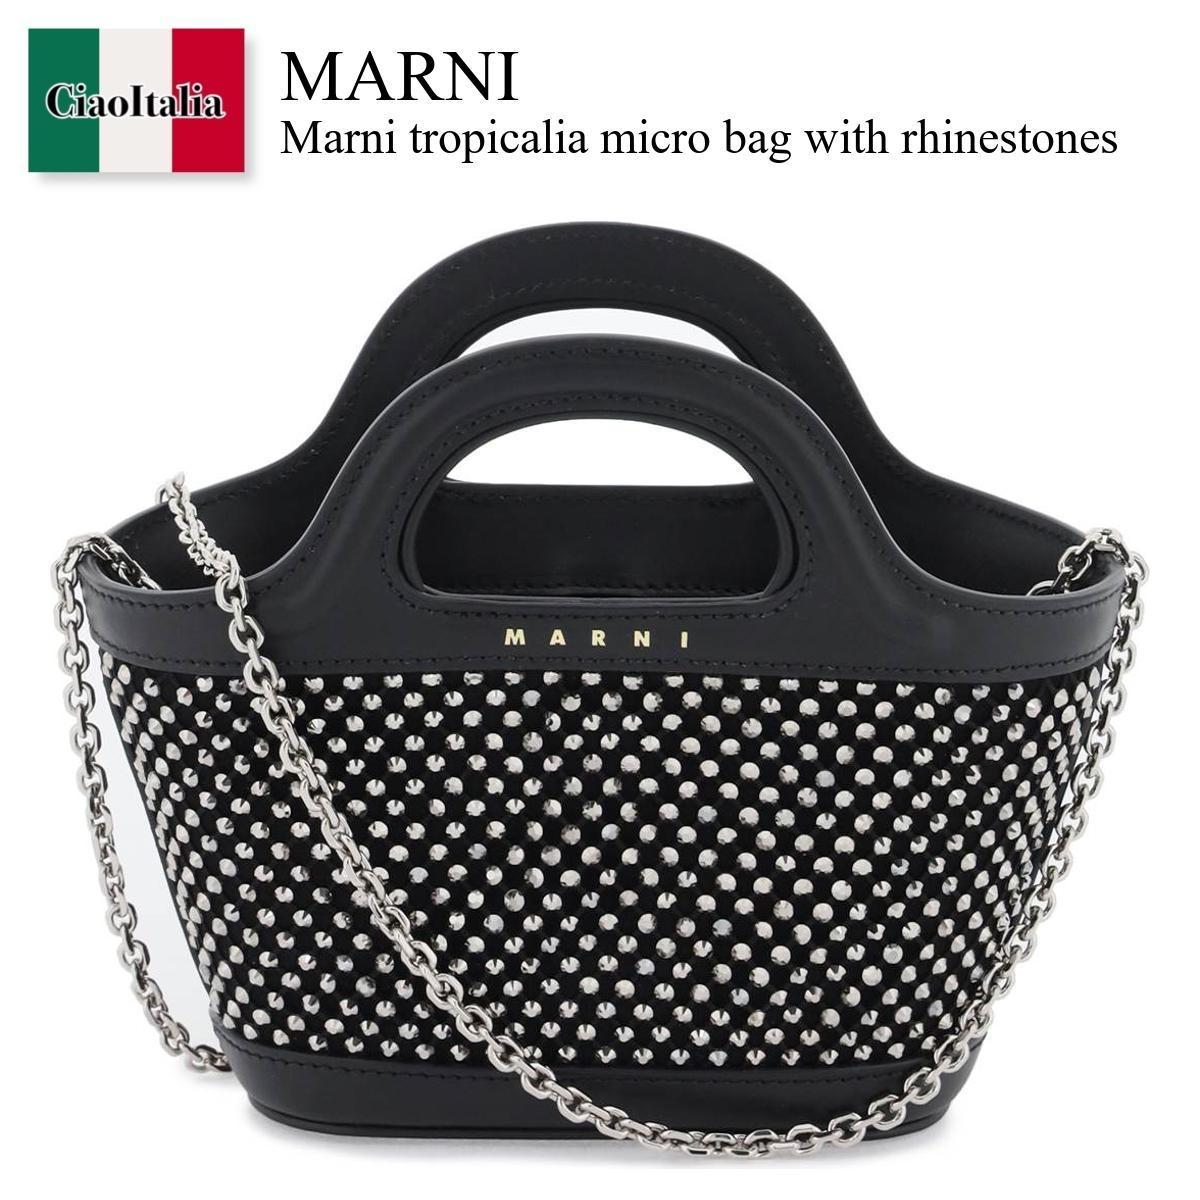 マルニ / Marni Tropicalia Micro Bag With Rhinestones / BMMP0137Q0P6450 / BMMP0137Q0P6450 00N99 / BMMP0137Q0P645000N99 / ハンドバッグ / 「正規品補償」「VIP価格販売」「お買い物サポート」